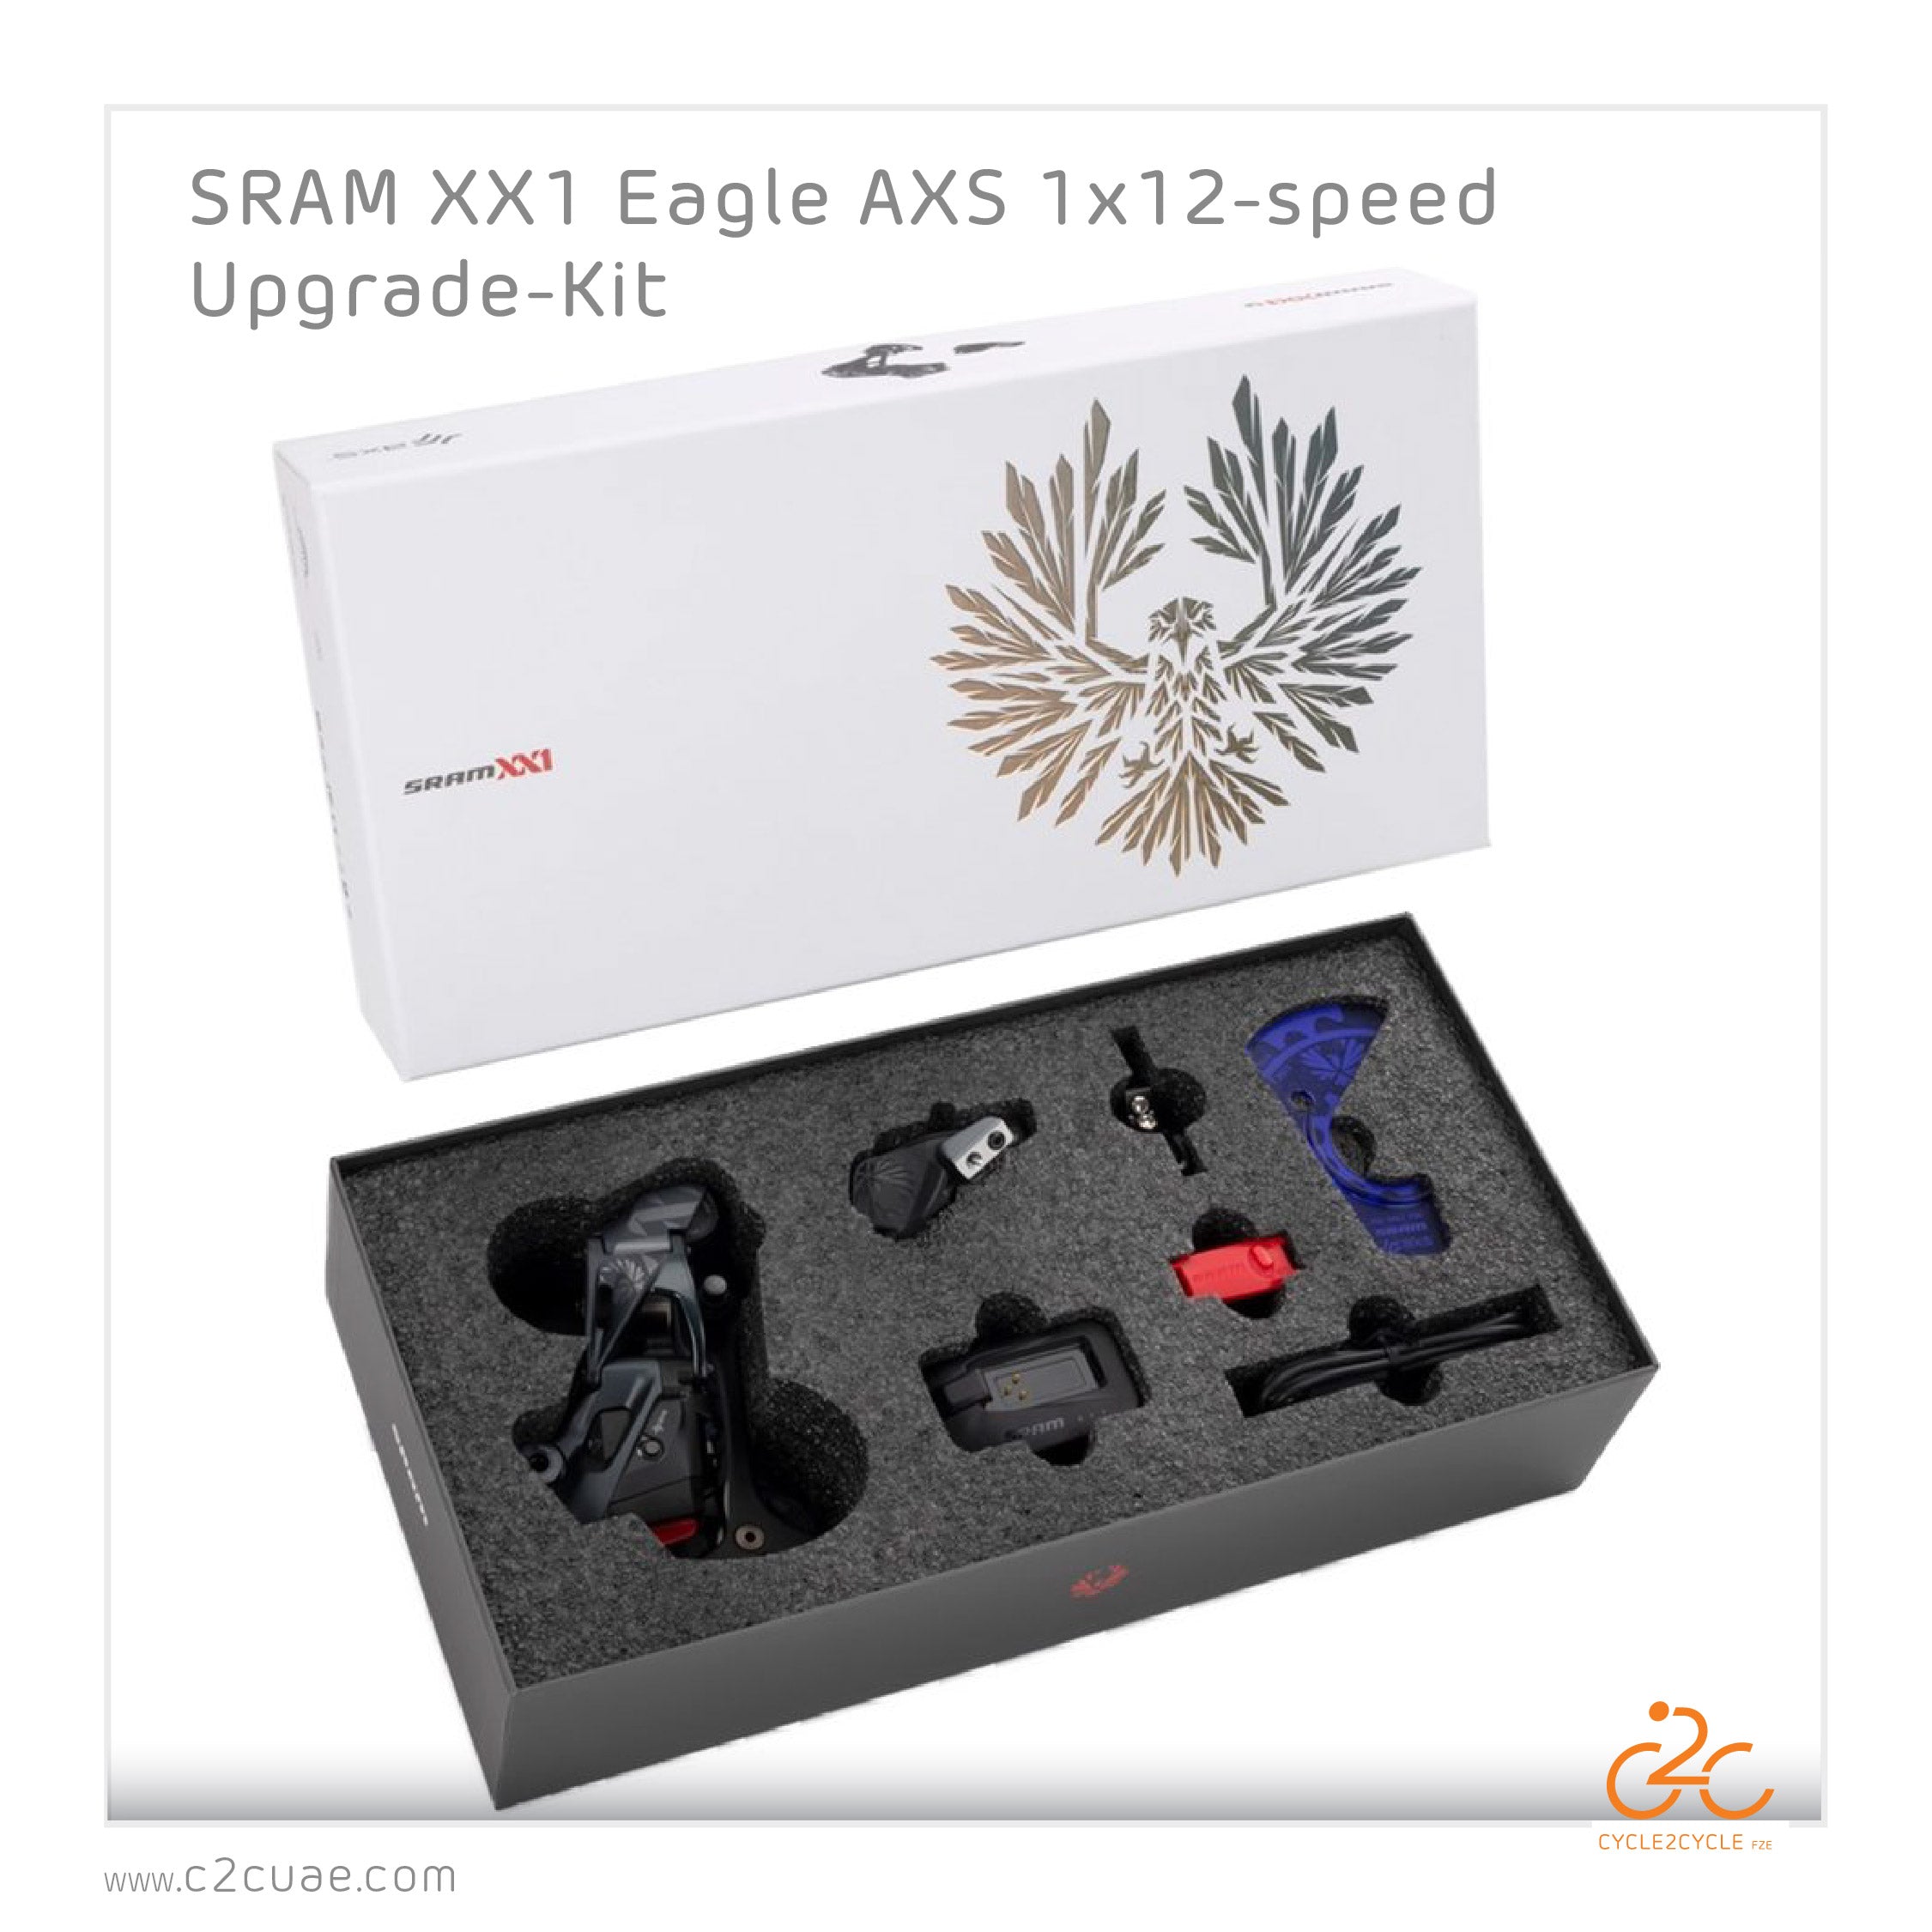 SRAM XX1 Eagle AXS 1x12-speed Upgrade-Kit